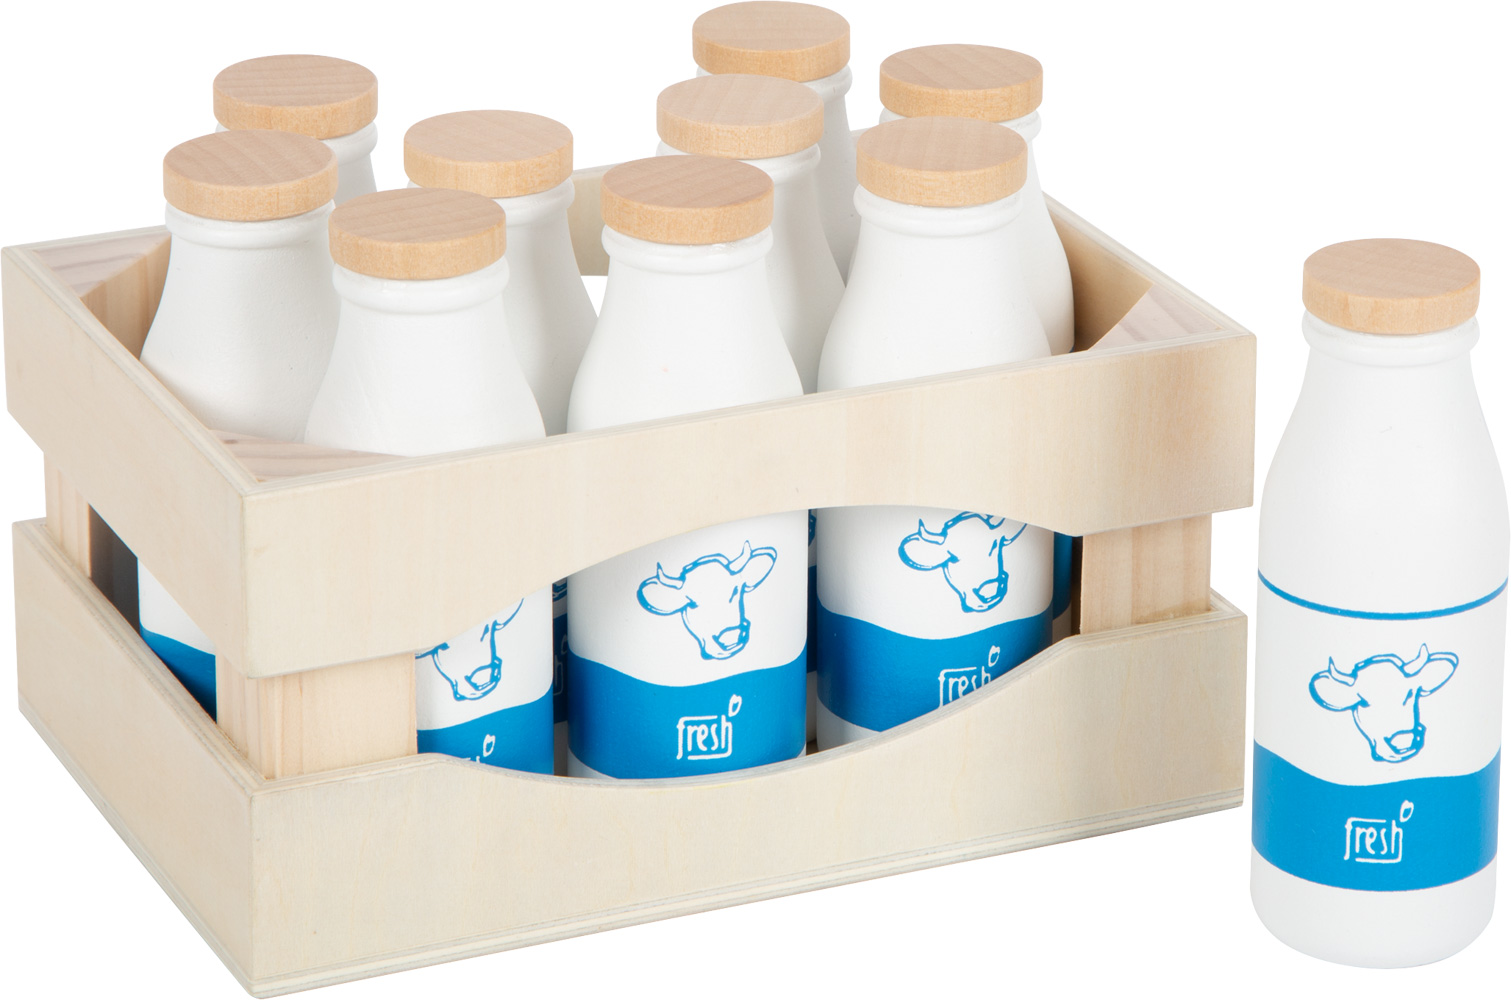 Acheter Bouteille de lait en bois pour jeu enfant